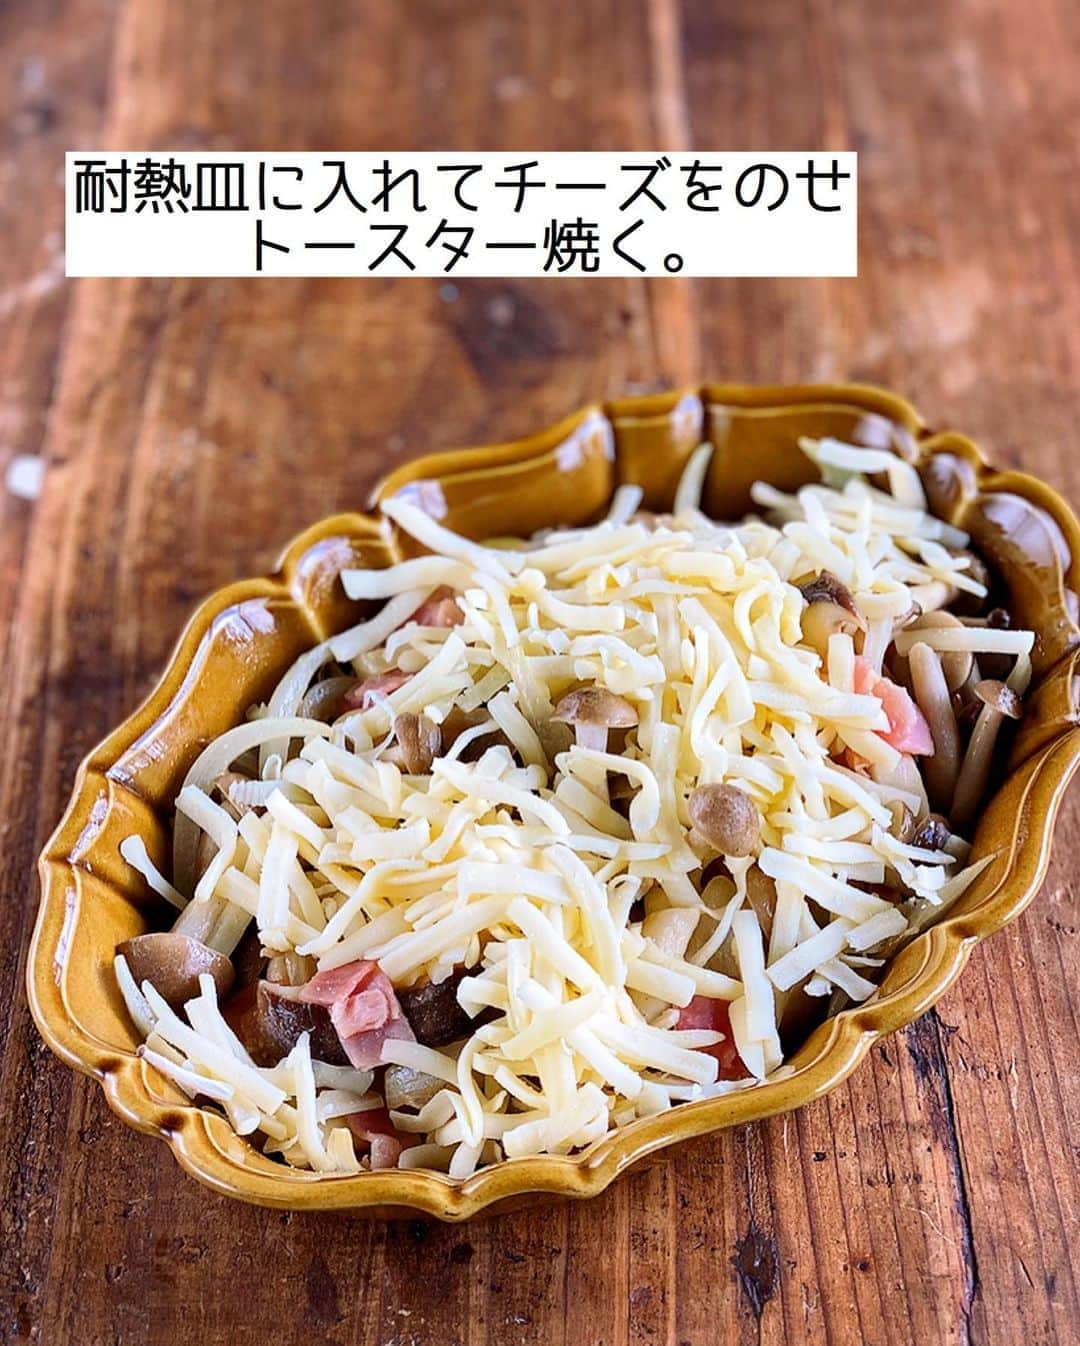 Mizuki【料理ブロガー・簡単レシピ】さんのインスタグラム写真 - (Mizuki【料理ブロガー・簡単レシピ】Instagram)「・﻿ 【#レシピ 】ーーーーーーーーーーー﻿ ♡ベーコンときのこのチーズ焼き♡﻿ ーーーーーーーーーーーーーーーーー﻿ ﻿ ﻿ ﻿ おはようございます(*^^*)﻿ ﻿ 今日ご紹介させていただくのは﻿ ベーコンときのこのチーズ焼き♩﻿ うま味たっぷりの素材に﻿ とろ〜りチーズが相性抜群(*´艸`)﻿ しかもとっても簡単なのに﻿ 小洒落て見える嬉しいおかずです♡﻿ (秋にぴったり🥺🍁)﻿ ﻿ さっと炒めてトースターで焼くだけなので﻿ お気軽にお試し下さいね(*^^*)﻿ ﻿ ﻿ ﻿ ＿＿＿＿＿＿＿＿＿＿＿＿＿＿＿＿＿＿＿＿﻿ 【2人分】﻿ ベーコン...2枚﻿ エリンギ...2本﻿ しめじ...1袋﻿ 玉ねぎ...1/2個﻿ オリーブオイル...大1﻿ ●バター5g﻿ ●醤油...小1﻿ ●塩こしょう...少々﻿ ピザ用チーズ...60g﻿ (あれば)パセリ...適量﻿ ﻿ 1.ベーコンは1cm幅に切る。エリンギは斜め1cm幅に切る。しめじはほぐす。玉ねぎは薄切りにする。﻿ 2.フライパンにオリーブオイルを中火で熱し、ベーコンと玉ねぎを炒める。玉ねぎがしんなりしたらきのこも加えて更に炒め、●を加えて煮からめる。﻿ 3.耐熱皿に2を入れてチーズをのせ、トースターでチーズに焼き色が付くまで焼く。仕上げにパセリを振る。﻿ ￣￣￣￣￣￣￣￣￣￣￣￣￣￣￣￣￣￣￣￣﻿ ﻿ ﻿ ﻿ 《ポイント》﻿ ♦︎きのこを加えたら炒め過ぎず、まだ少しかたいくらいで調味料をからめて下さい♩﻿ ﻿ ﻿ ﻿ ﻿ ﻿ ﻿ ﻿ ﻿ ⭐️発売中⭐️3刷重版が決まりました😭﻿ 本当にありがとうございます(涙)﻿ _____________________________________﻿ \15分でいただきます/﻿ 📕#Mizukiの2品献立 📕﻿ (9月24日発売・マガジンハウス)﻿ ￣￣￣￣￣￣￣￣￣￣￣￣￣￣￣￣￣﻿ ﻿ 忙しい私たちには﻿ 2品くらいがちょうどいい！﻿ 『しんどくない献立、考えました』﻿ ￣￣￣￣￣￣￣￣￣￣￣￣￣￣￣￣﻿ ﻿ ーーーーーPART.1 ーーーーー﻿ 【Mizukiのお墨つき！２品献立ベスト10】﻿ 約15分でできる10献立をご紹介！﻿ メインは全部フライパン、副菜はレンチンor混ぜるだけ♡﻿ ﻿ ーーーーーPART.2 ーーーーー﻿ 【フライパンひとつ！今夜のメインおかず】﻿ 献立の主役になる肉や魚のおかず50品！﻿ Part3の副菜と組み合わせれば﻿ 献立のバリエーションが広がりますよ♩﻿ ﻿ ーーーーー PART.3 ーーーーー﻿ 【合間に作れる！ 野菜別かんたん副菜】﻿ レンチンor和えるだけの副菜レシピを﻿ 素材別にたっぷり収録♩﻿ ﻿ ーーーーー番外編ーーーーー﻿ 【ひとつで満足！ご飯＆麺】﻿ 【具だくさん！おかずスープ】﻿ 【オーブンいらずのおやつレシピ】﻿ ￣￣￣￣￣￣￣￣￣￣￣￣￣￣￣￣￣￣﻿ (ハイライトにリンク🔗あります💗)﻿ ﻿ ﻿ ﻿ ﻿ ＿＿＿＿＿＿＿＿＿＿＿＿＿＿＿＿＿＿﻿ 🔔テレビ出演のお知らせ🔔﻿ 10月12日〜22日までの2週間(月〜木)﻿ 【NHK Eテレ まる得マガジン 】が﻿ 再放送されています☺️(昼11:55〜)﻿ 俳優の武田航平さん﻿ (@kouhei_takeda.official )と一緒に﻿ 絶品おやつから意外なランチまで﻿ たくさん作らせていただきますよ♩﻿ ﻿ ＊NHKテキスト発売中です📕﻿ ￣￣￣￣￣￣￣￣￣￣￣￣￣￣￣￣￣￣﻿ ﻿ ﻿ ﻿ ﻿ ﻿ レシピを作って下さった際や﻿ レシピ本についてのご投稿には﻿ タグ付け( @mizuki_31cafe )して﻿ お知らせいただけると嬉しいです😊💕﻿ ﻿ ﻿ ﻿ ﻿ ﻿ ﻿ #きのこ#チーズ焼き#トースター#秋レシピ#Mizuki#簡単レシピ#時短レシピ#節約レシピ#料理#フーディーテーブル#マカロニメイト#おうちごはん#デリスタグラマー#料理好きな人と繋がりたい#食べ物#料理記録#おうちごはんlover#写真好きな人と繋がりたい#foodpic#cooking#recipe#lin_stagrammer#foodporn#yummy#f52grams#ベーコンときのこのチーズ焼きm」10月22日 7時08分 - mizuki_31cafe